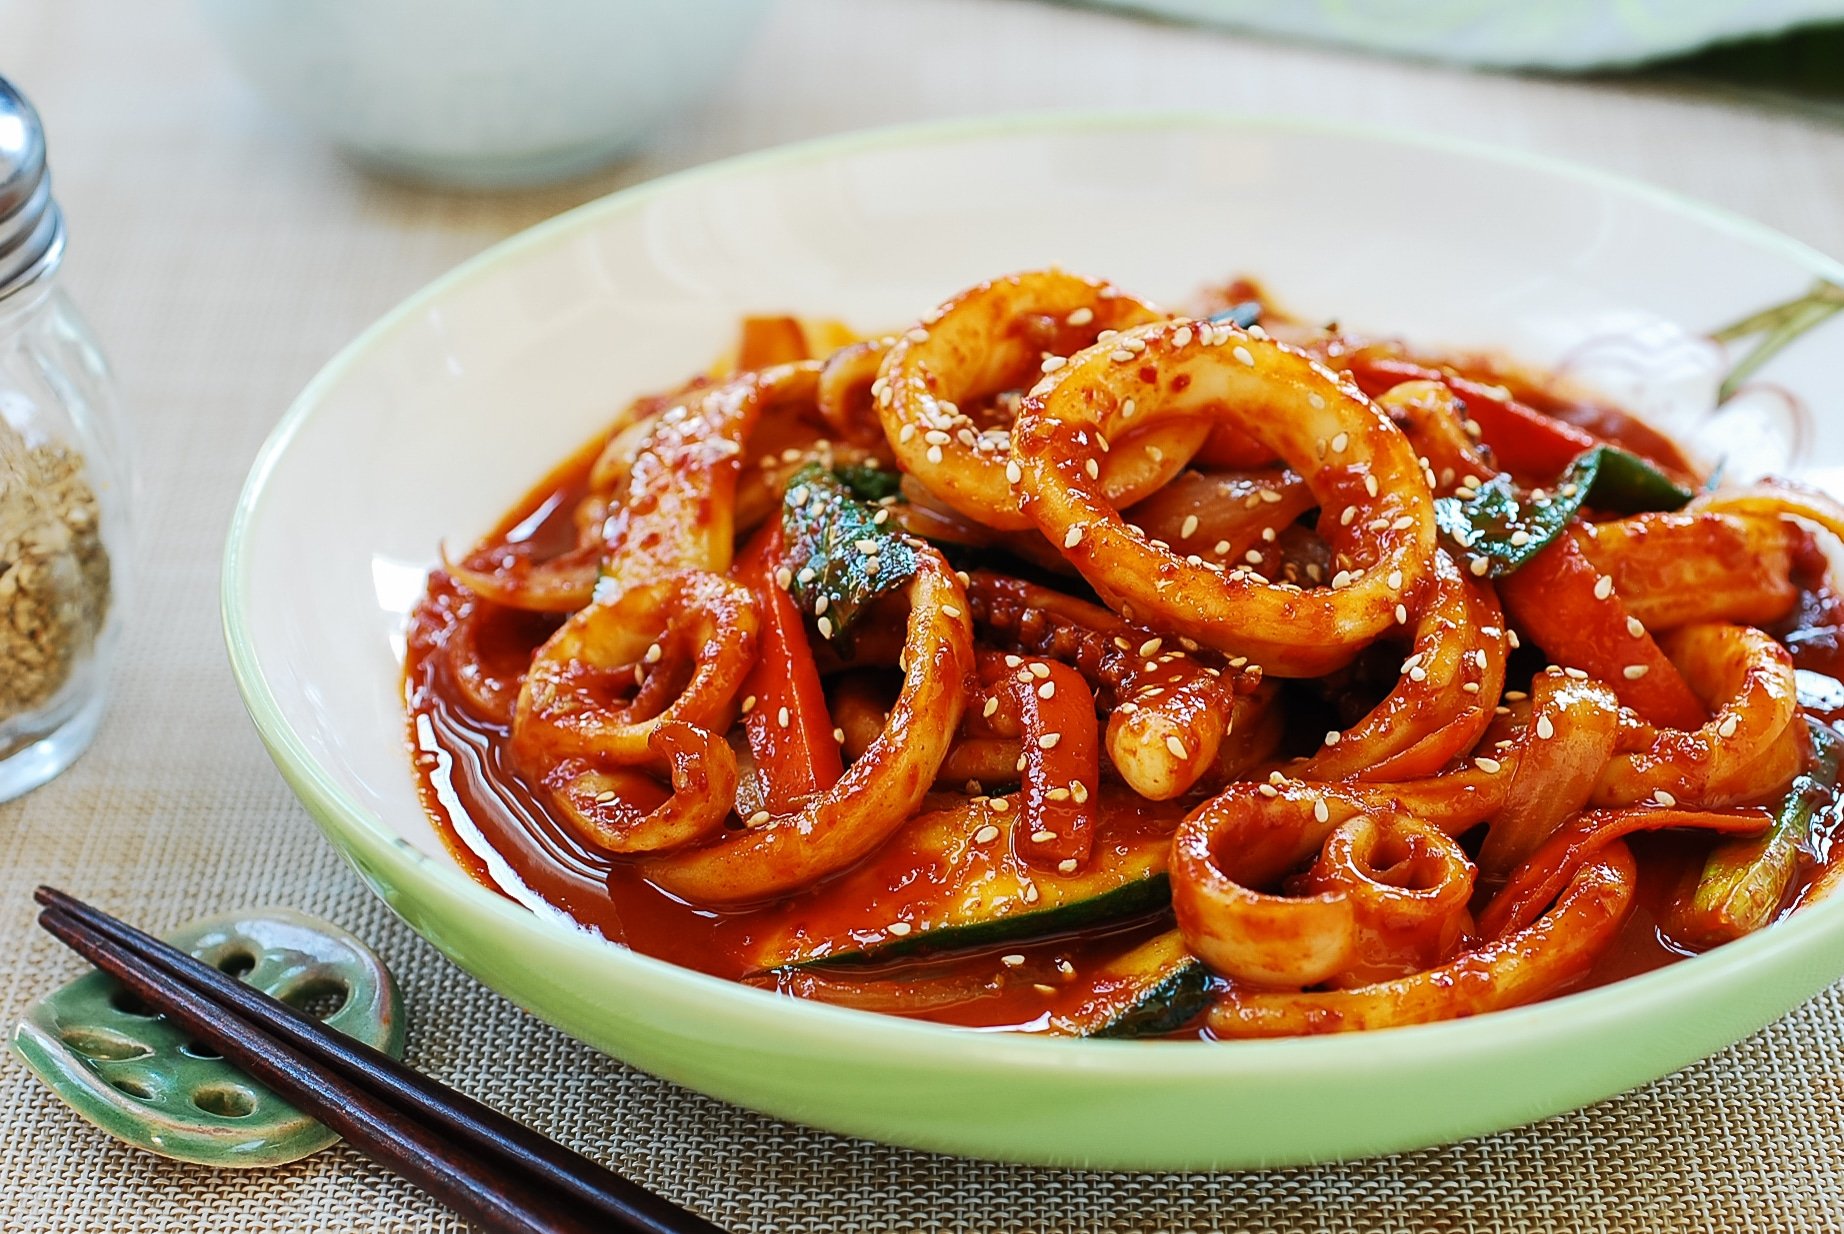 Panchan - Món ăn kèm trong mỗi bữa ăn của người Hàn Quốc - Ảnh 6